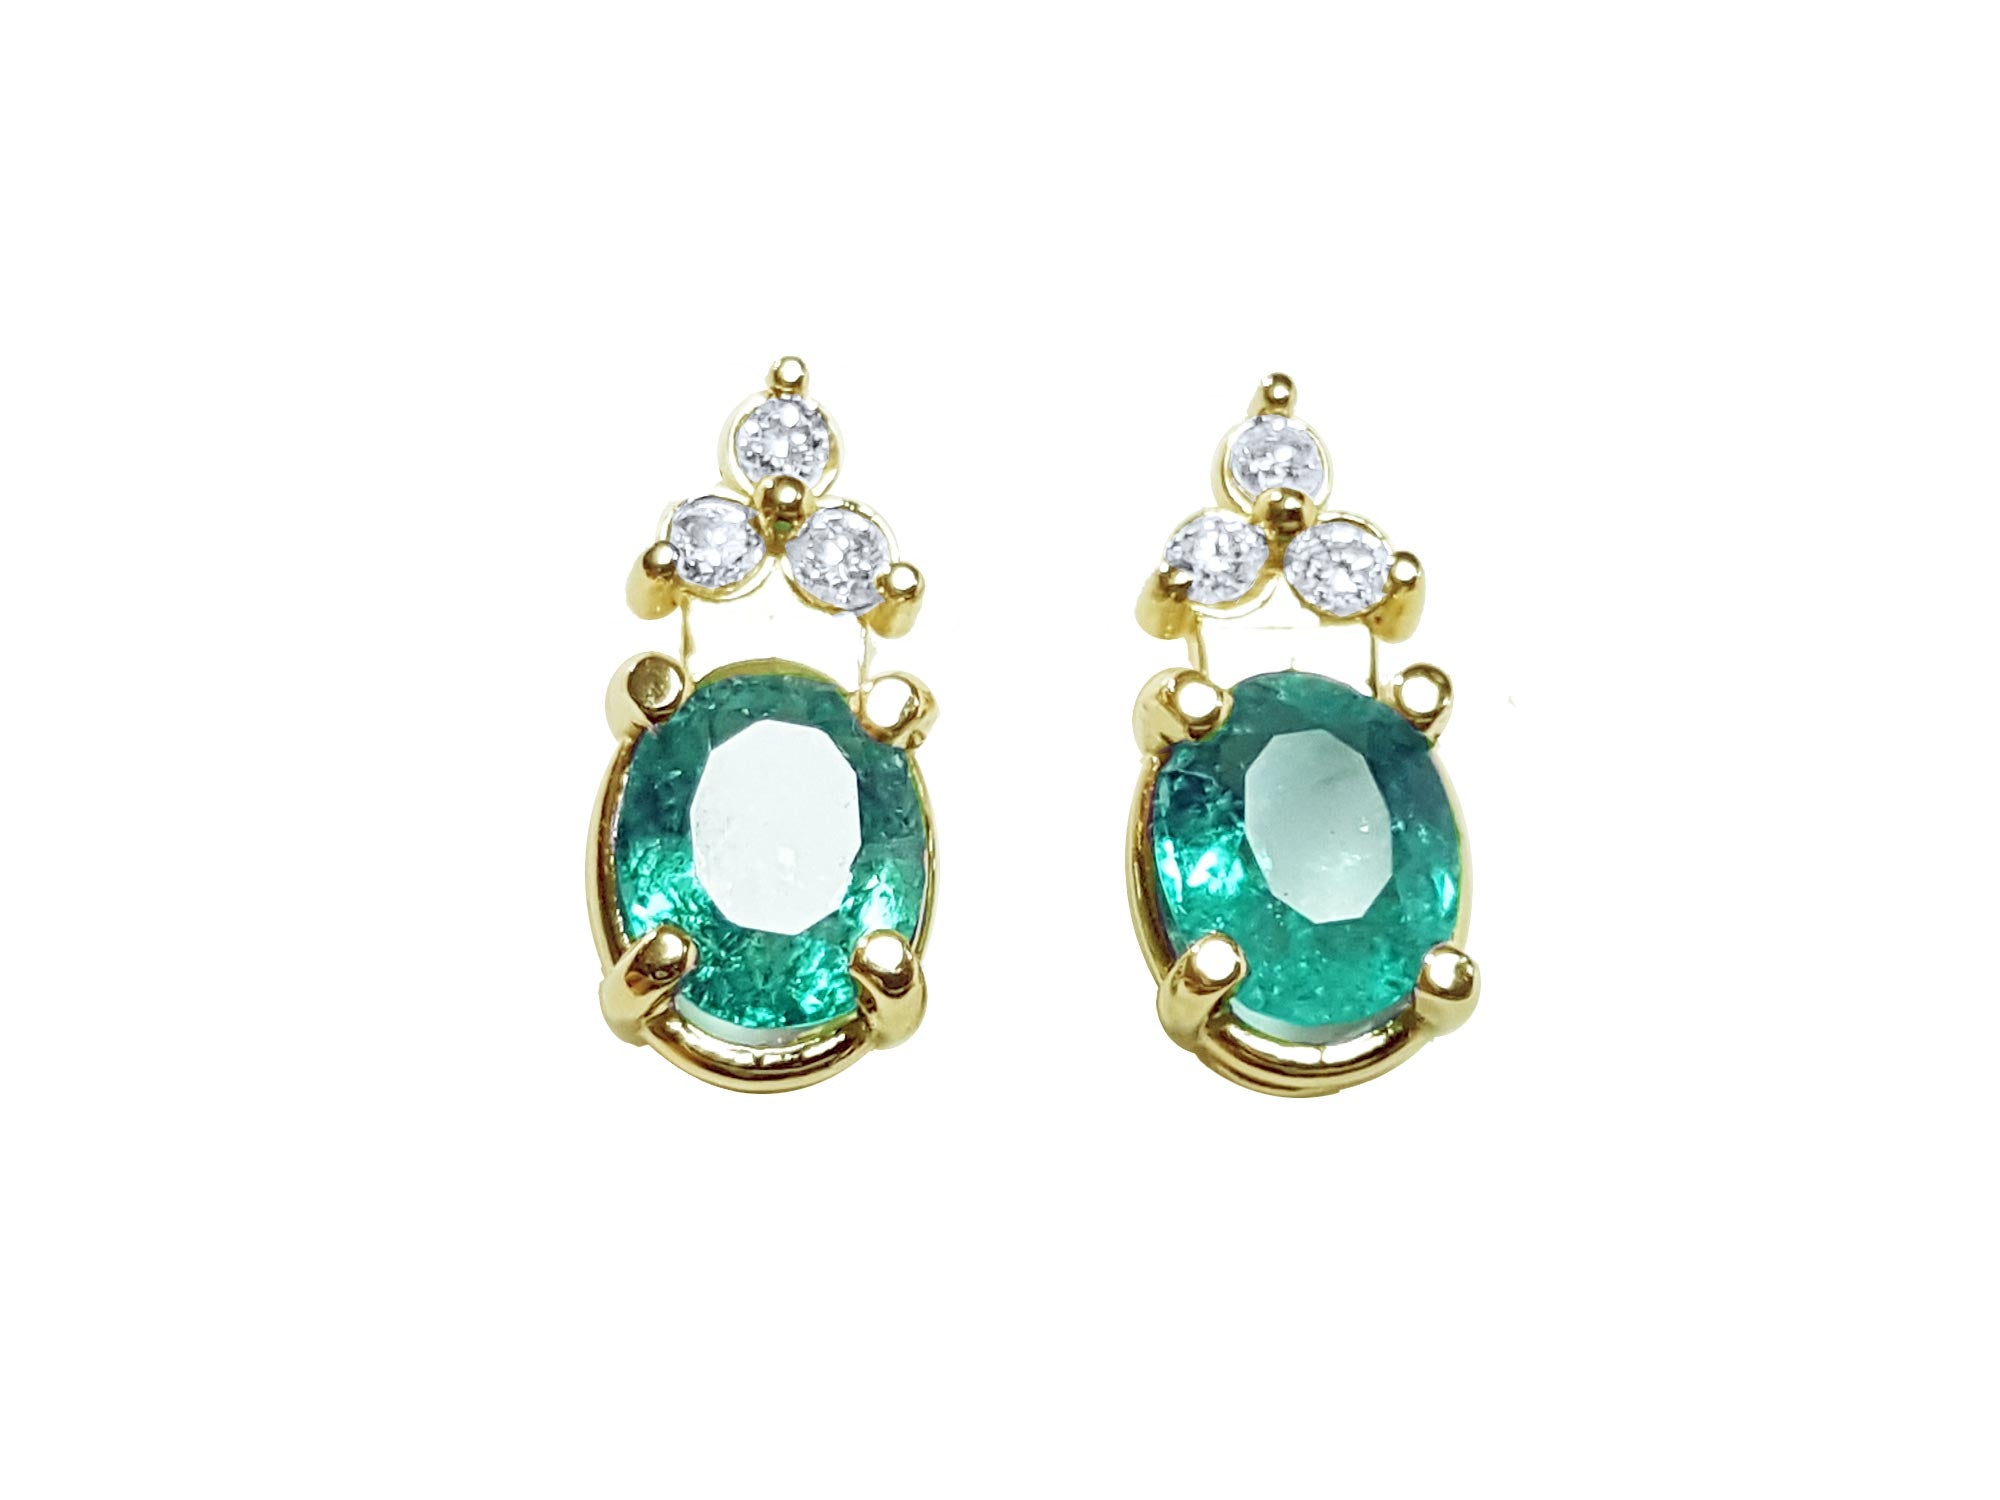 Oval shaped emerald stud earrings